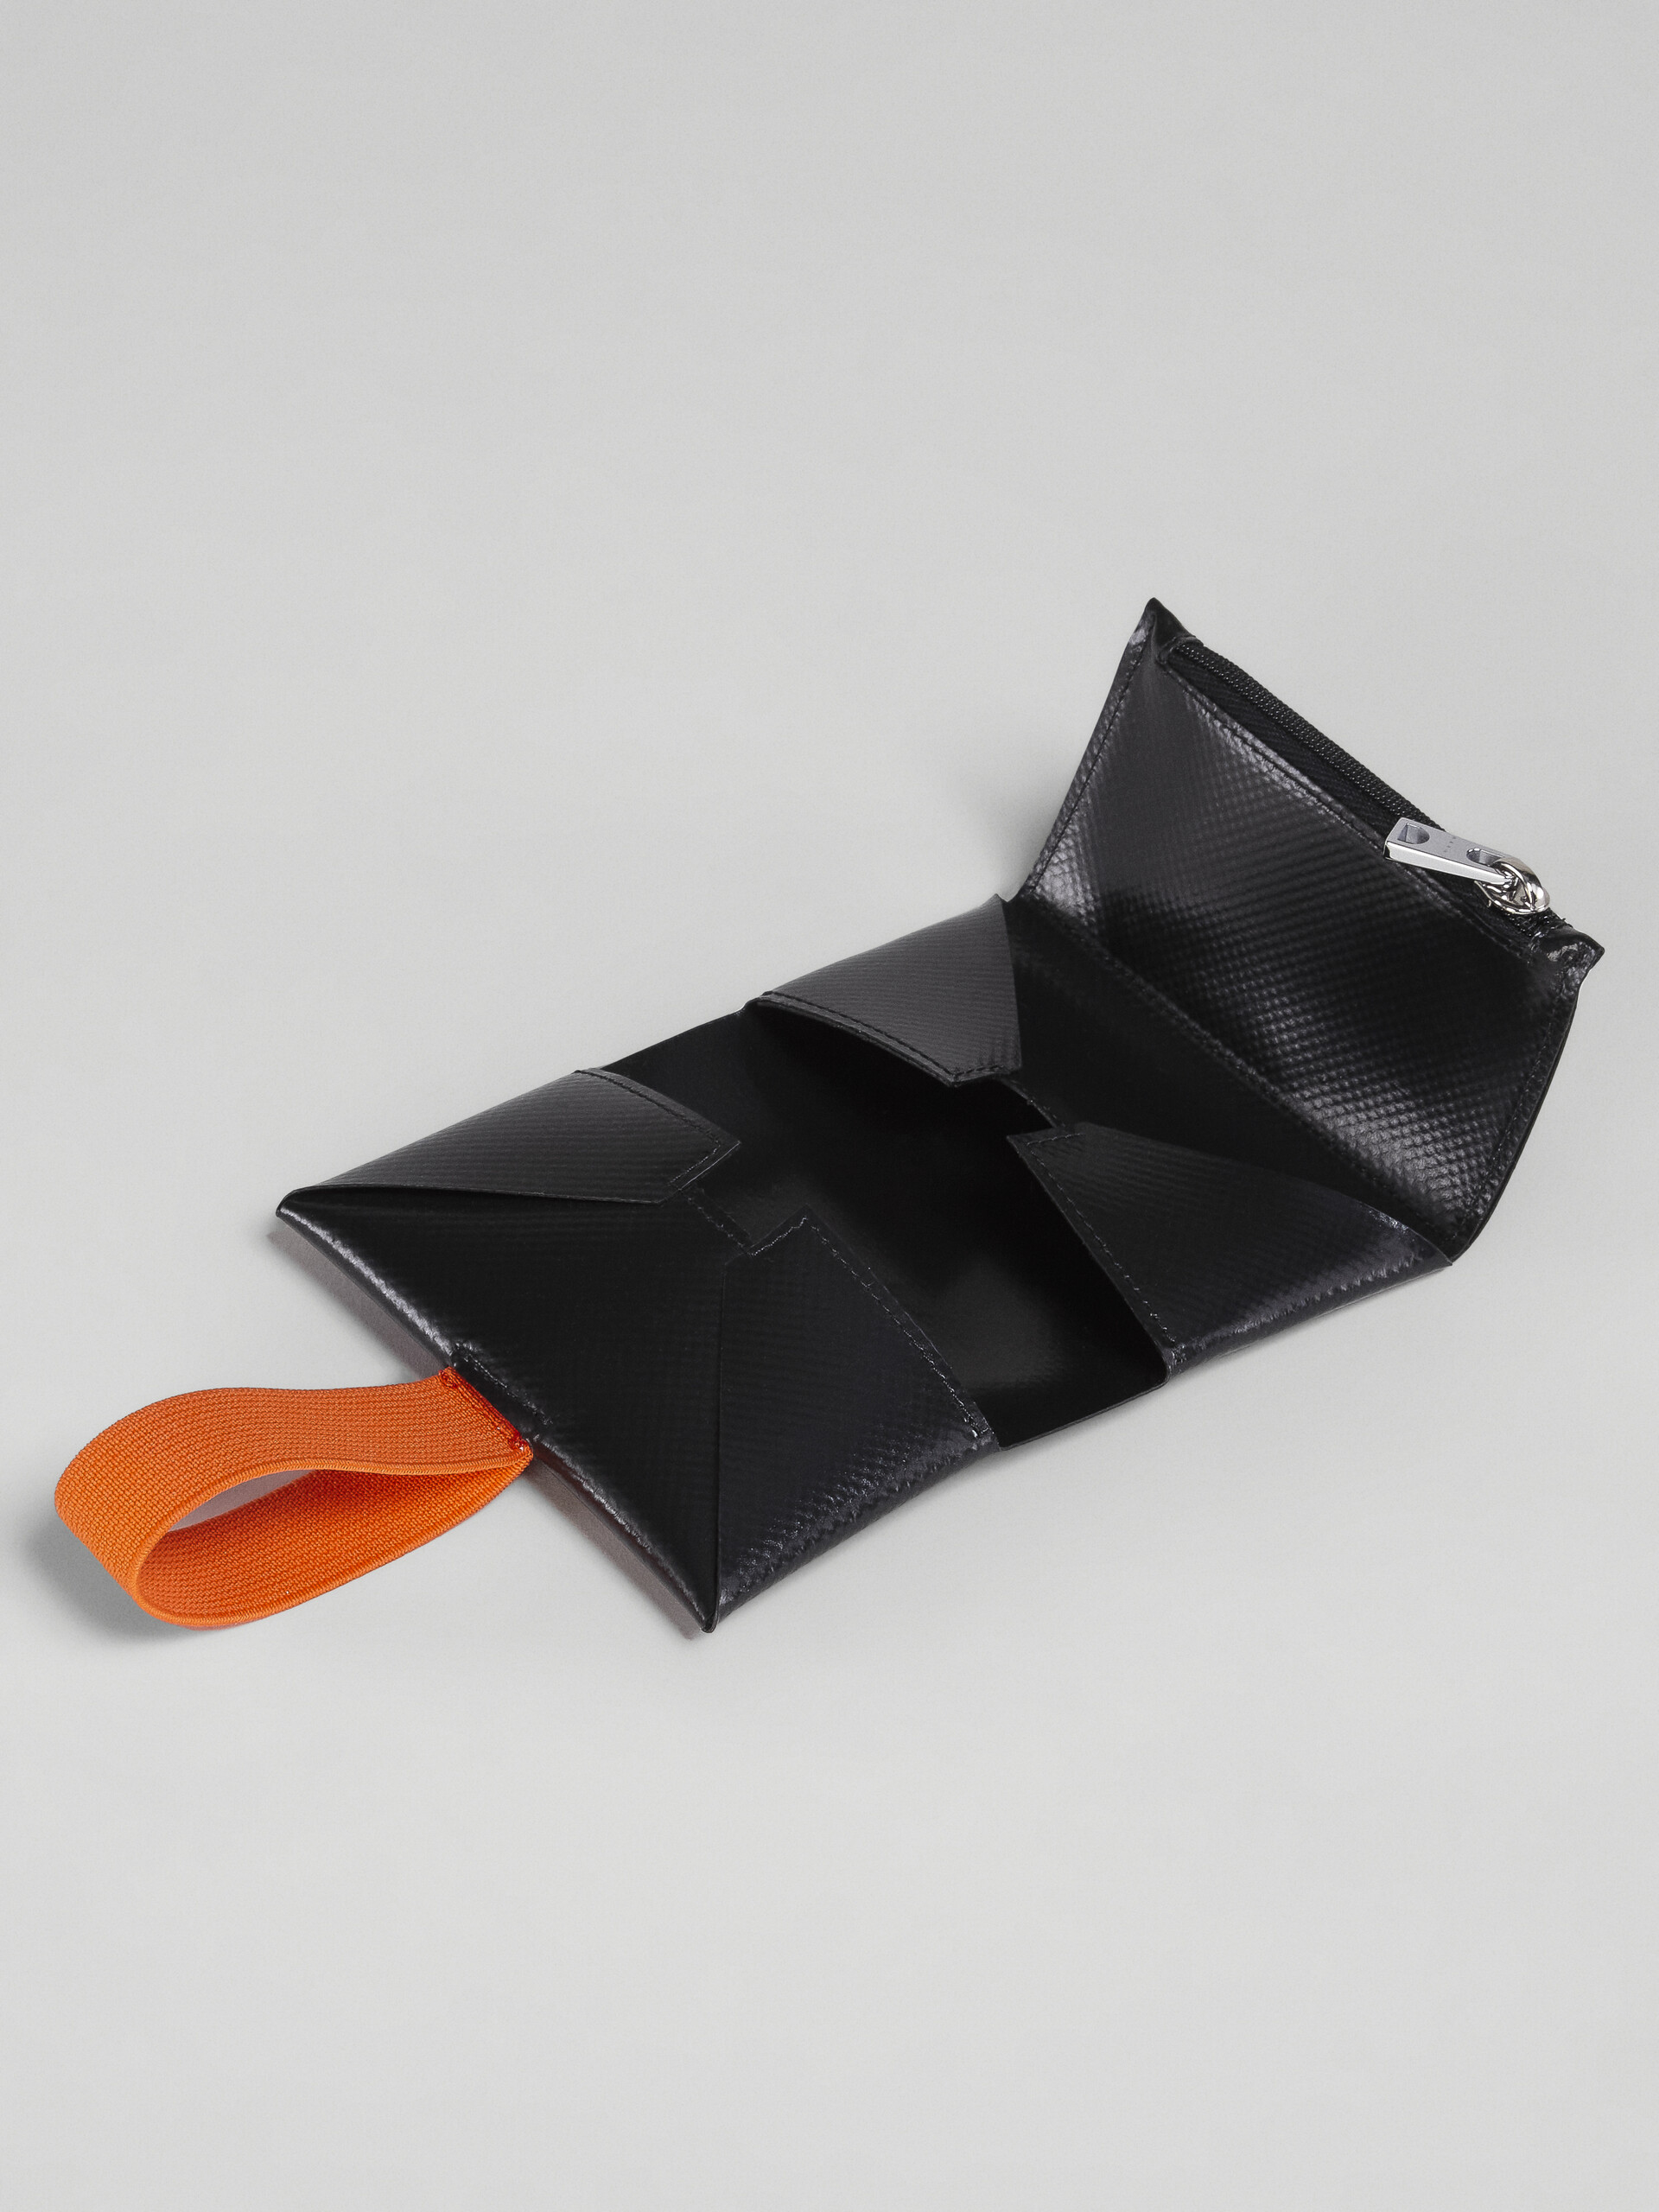 Origami-Portemonnaie in Schwarz und Orange - Brieftaschen - Image 5